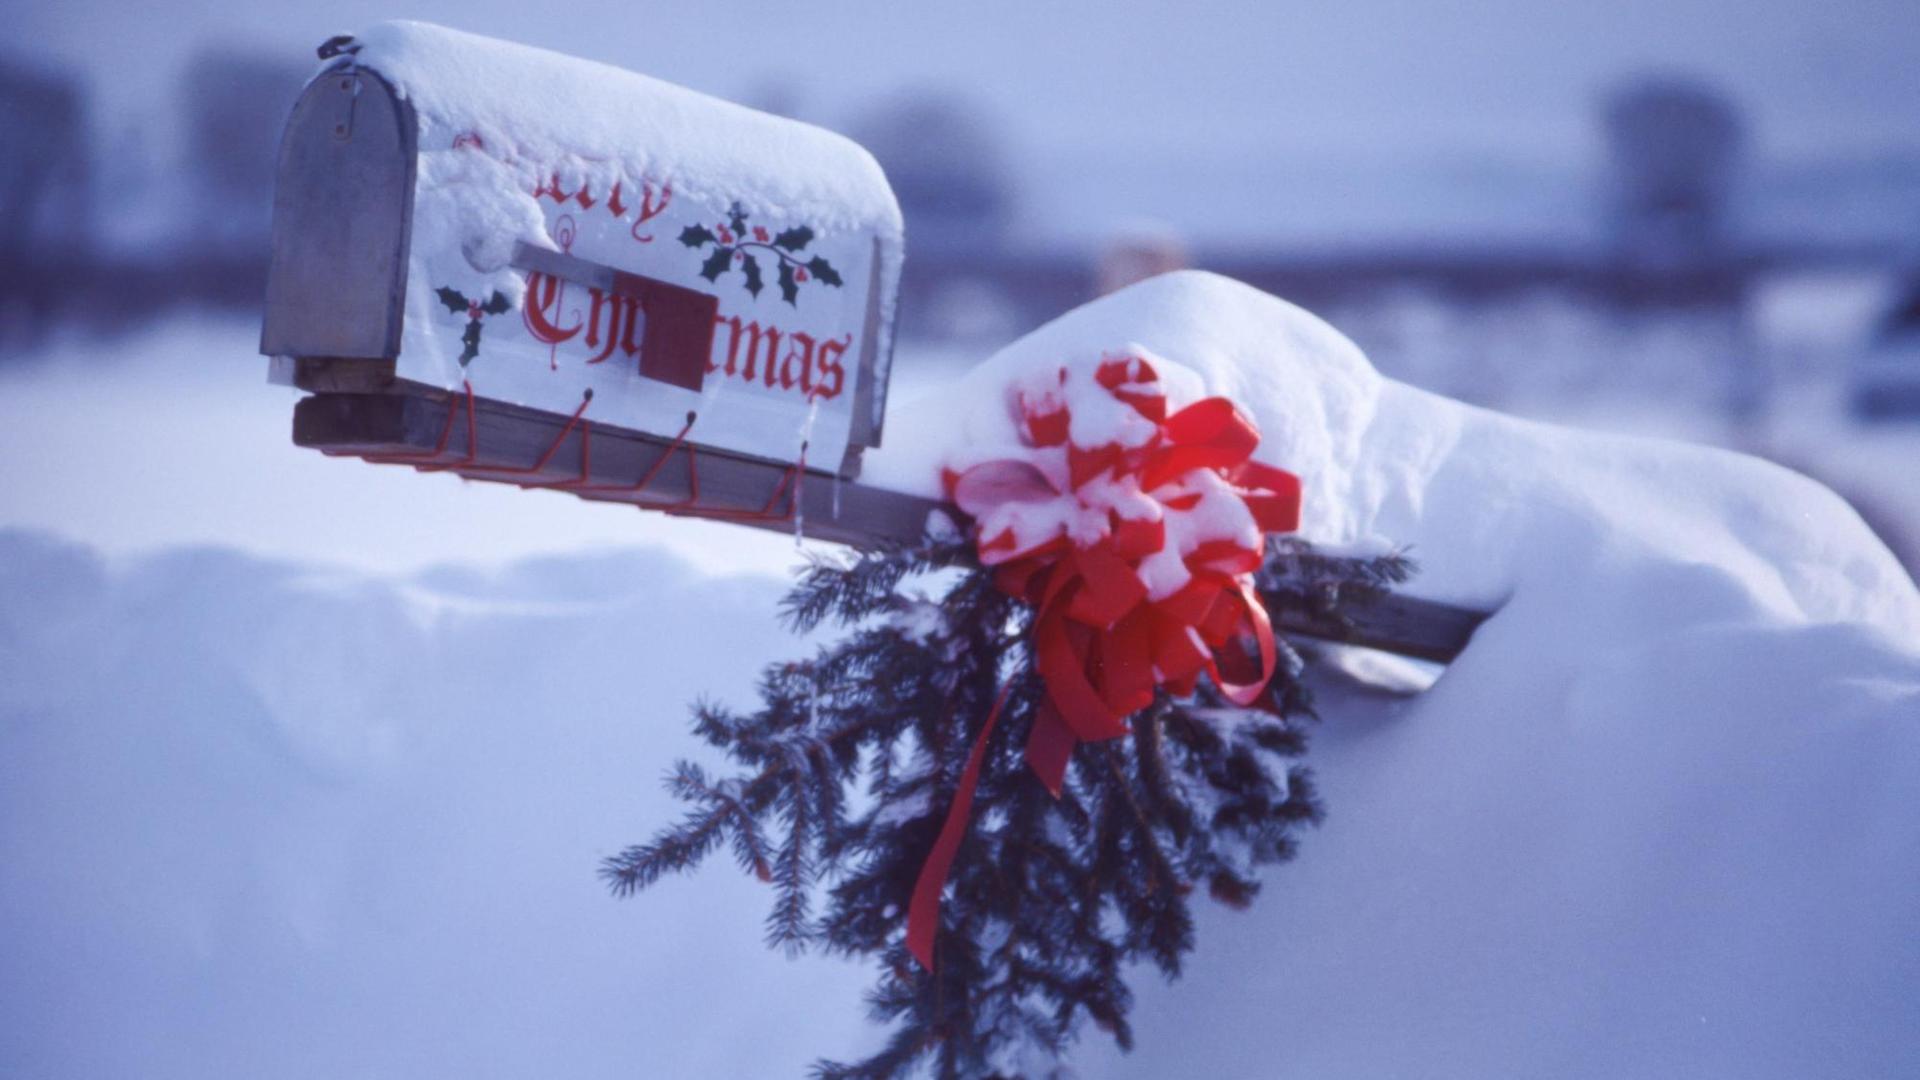 Ein amerikanischer Briefkasten, eingeschneit, mit weihnachtlichem Schmuck und Tannenzweig.